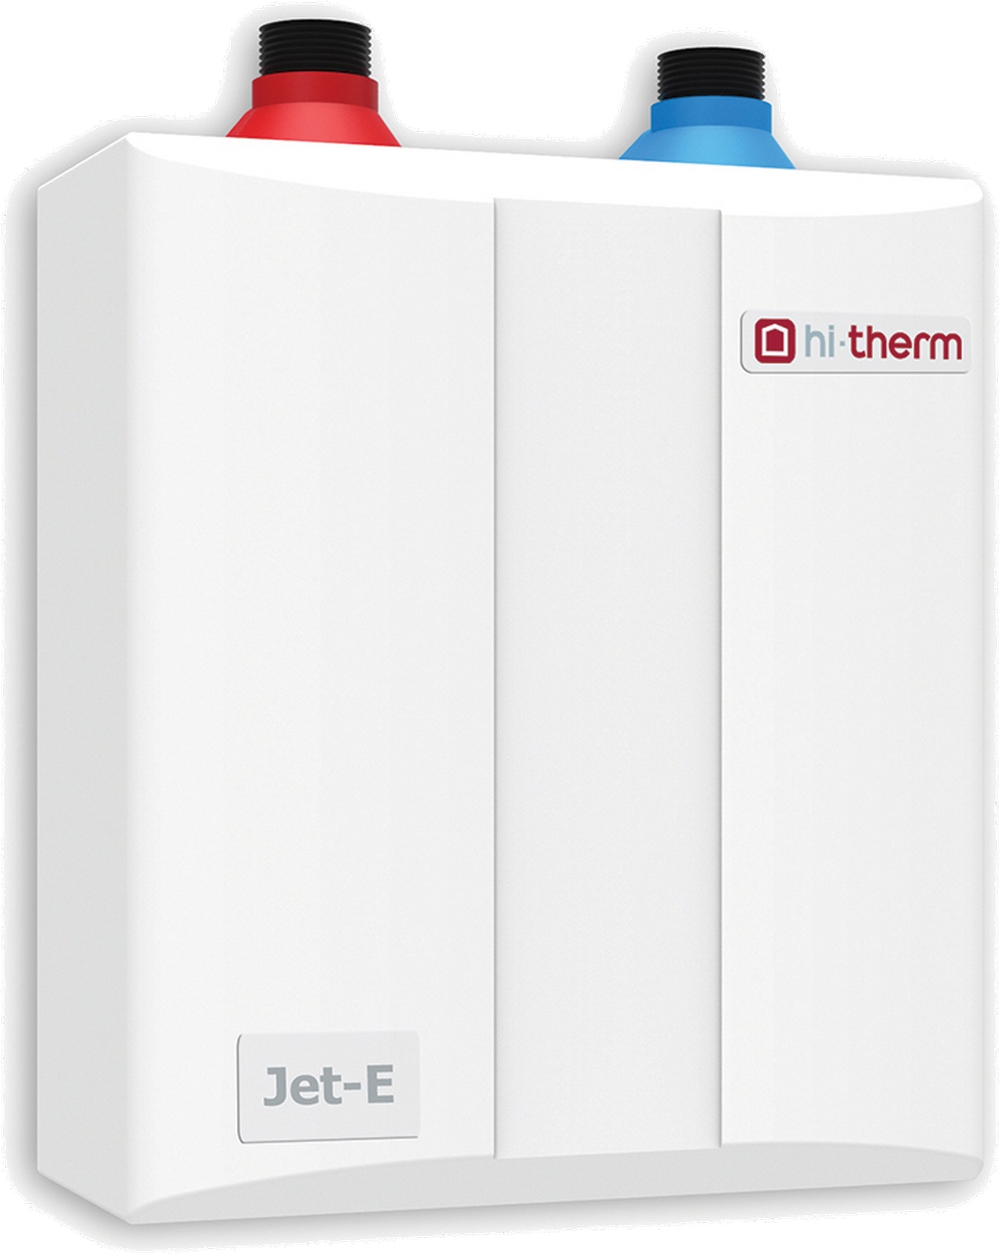 Купить проточный водонагреватель мощностью 7 киловатт Hi-Therm JET-E 7.0 в Киеве